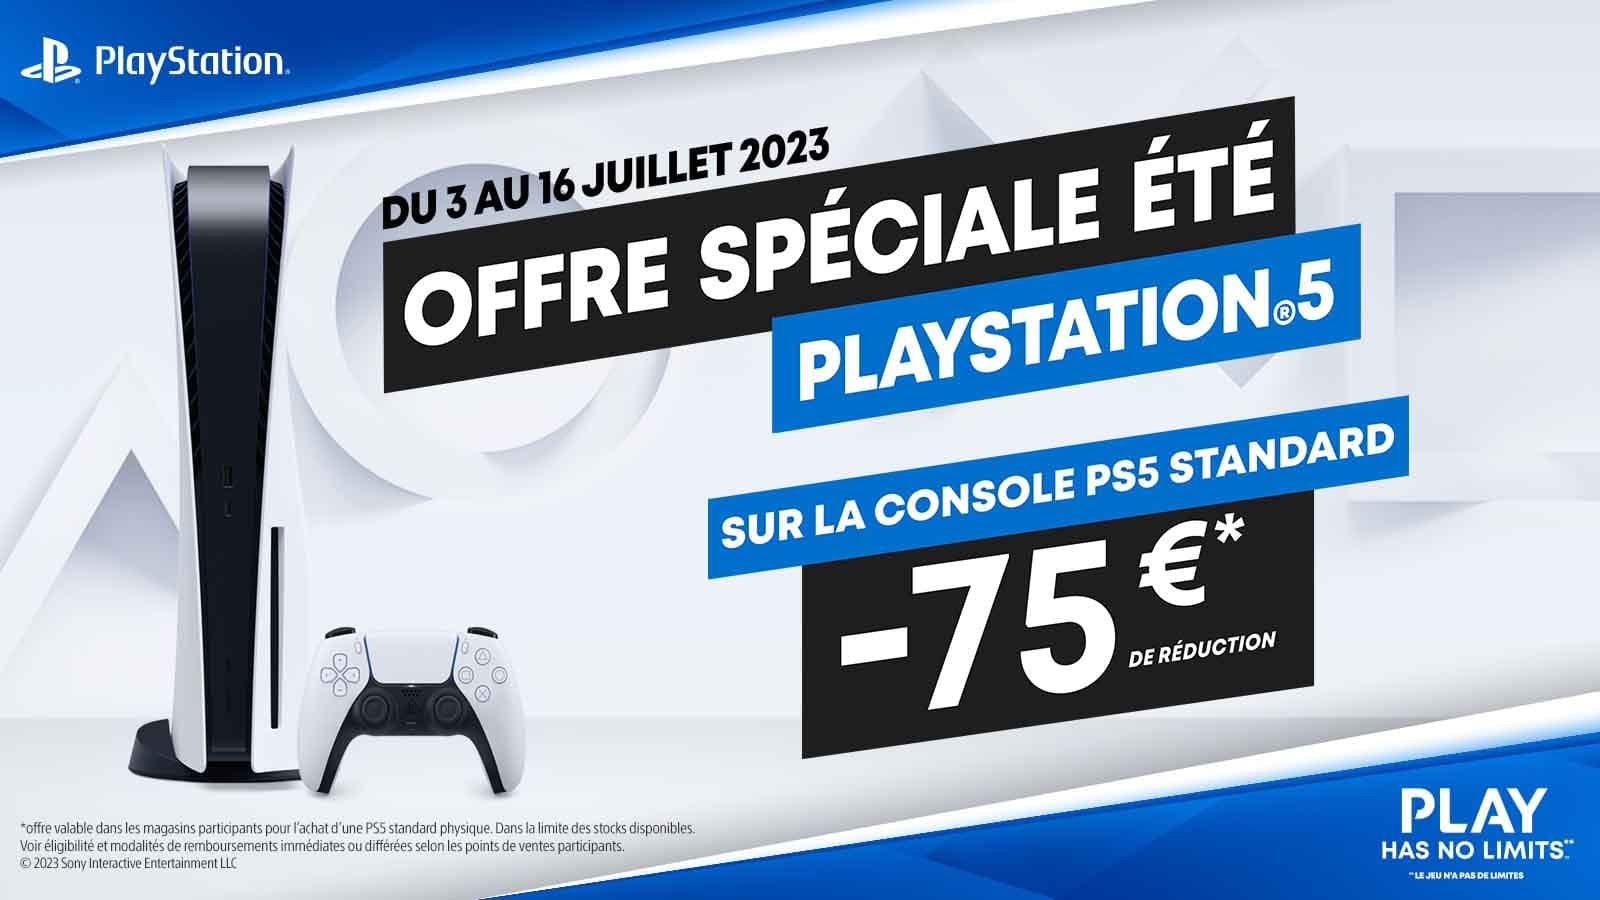 La manette PS5 officielle est disponible en promotion chez